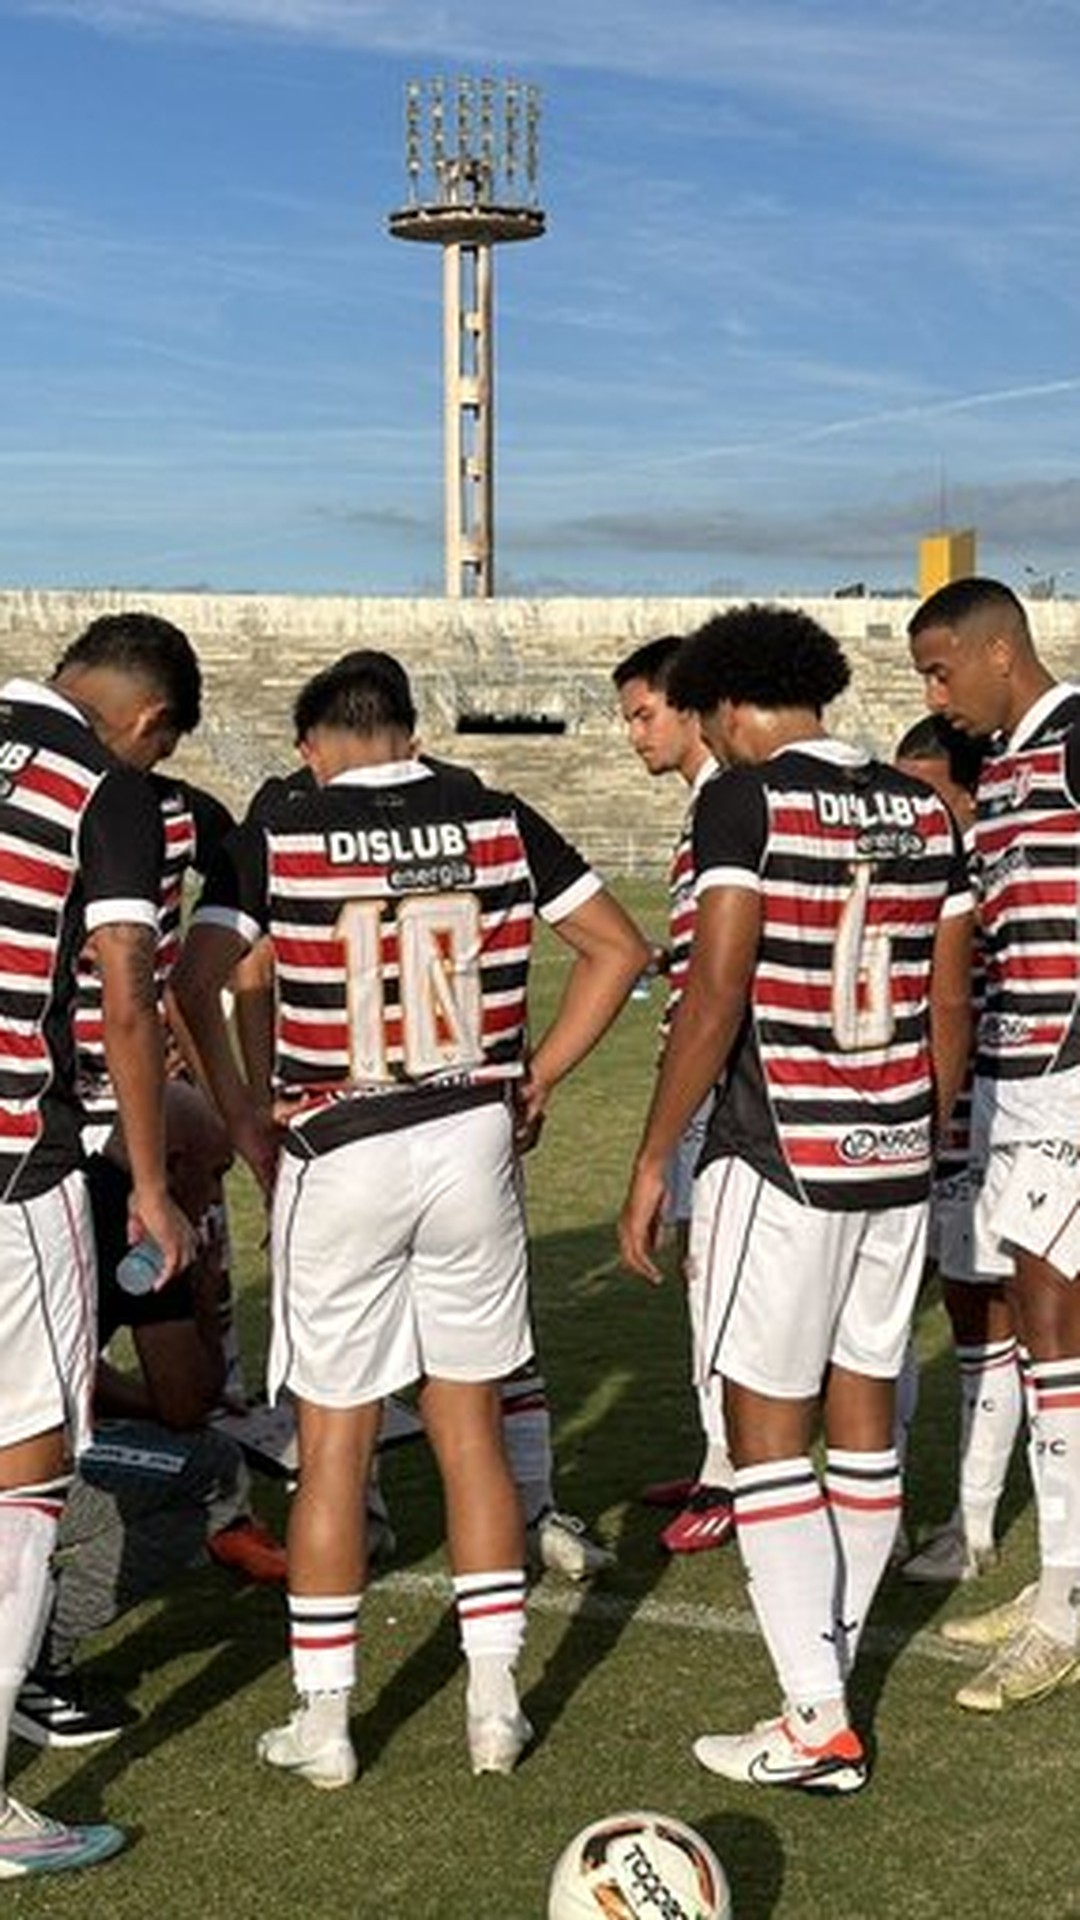 Globo Esporte AM, CDC Nova Olinda e Clipper estream no Campeonato  ense da Série B empatados